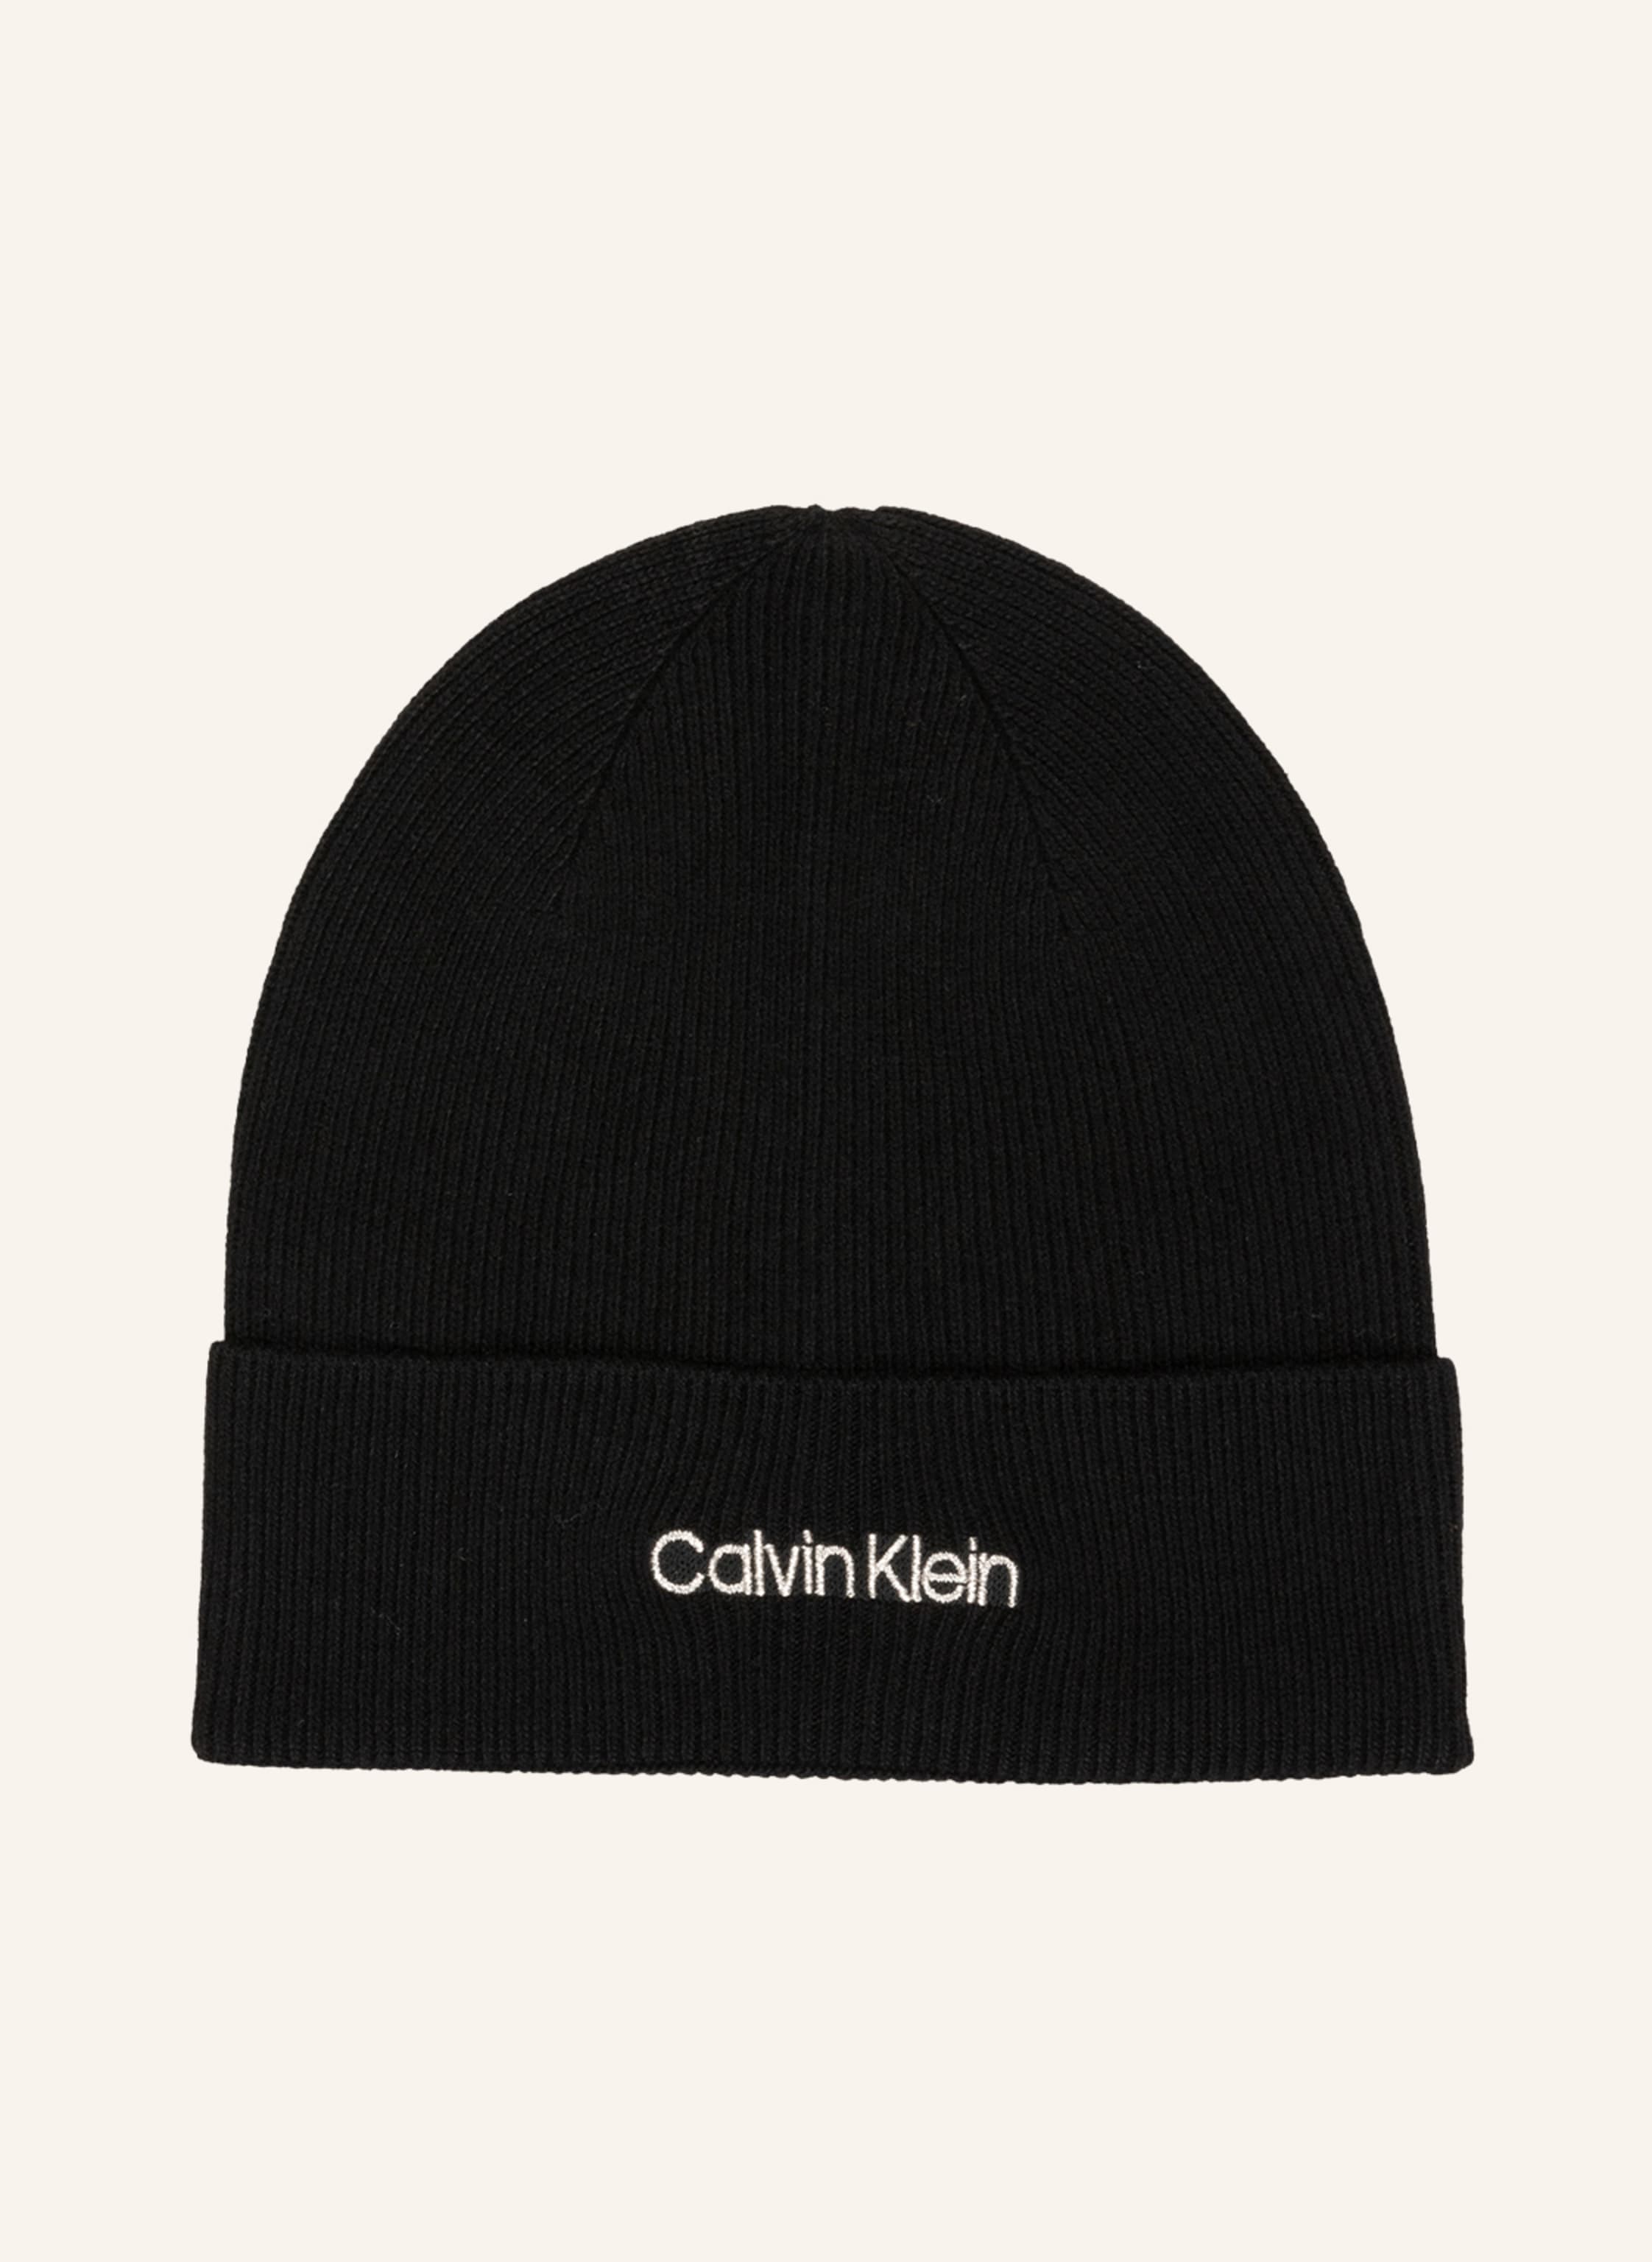 Calvin Klein Beanie in black | Breuninger